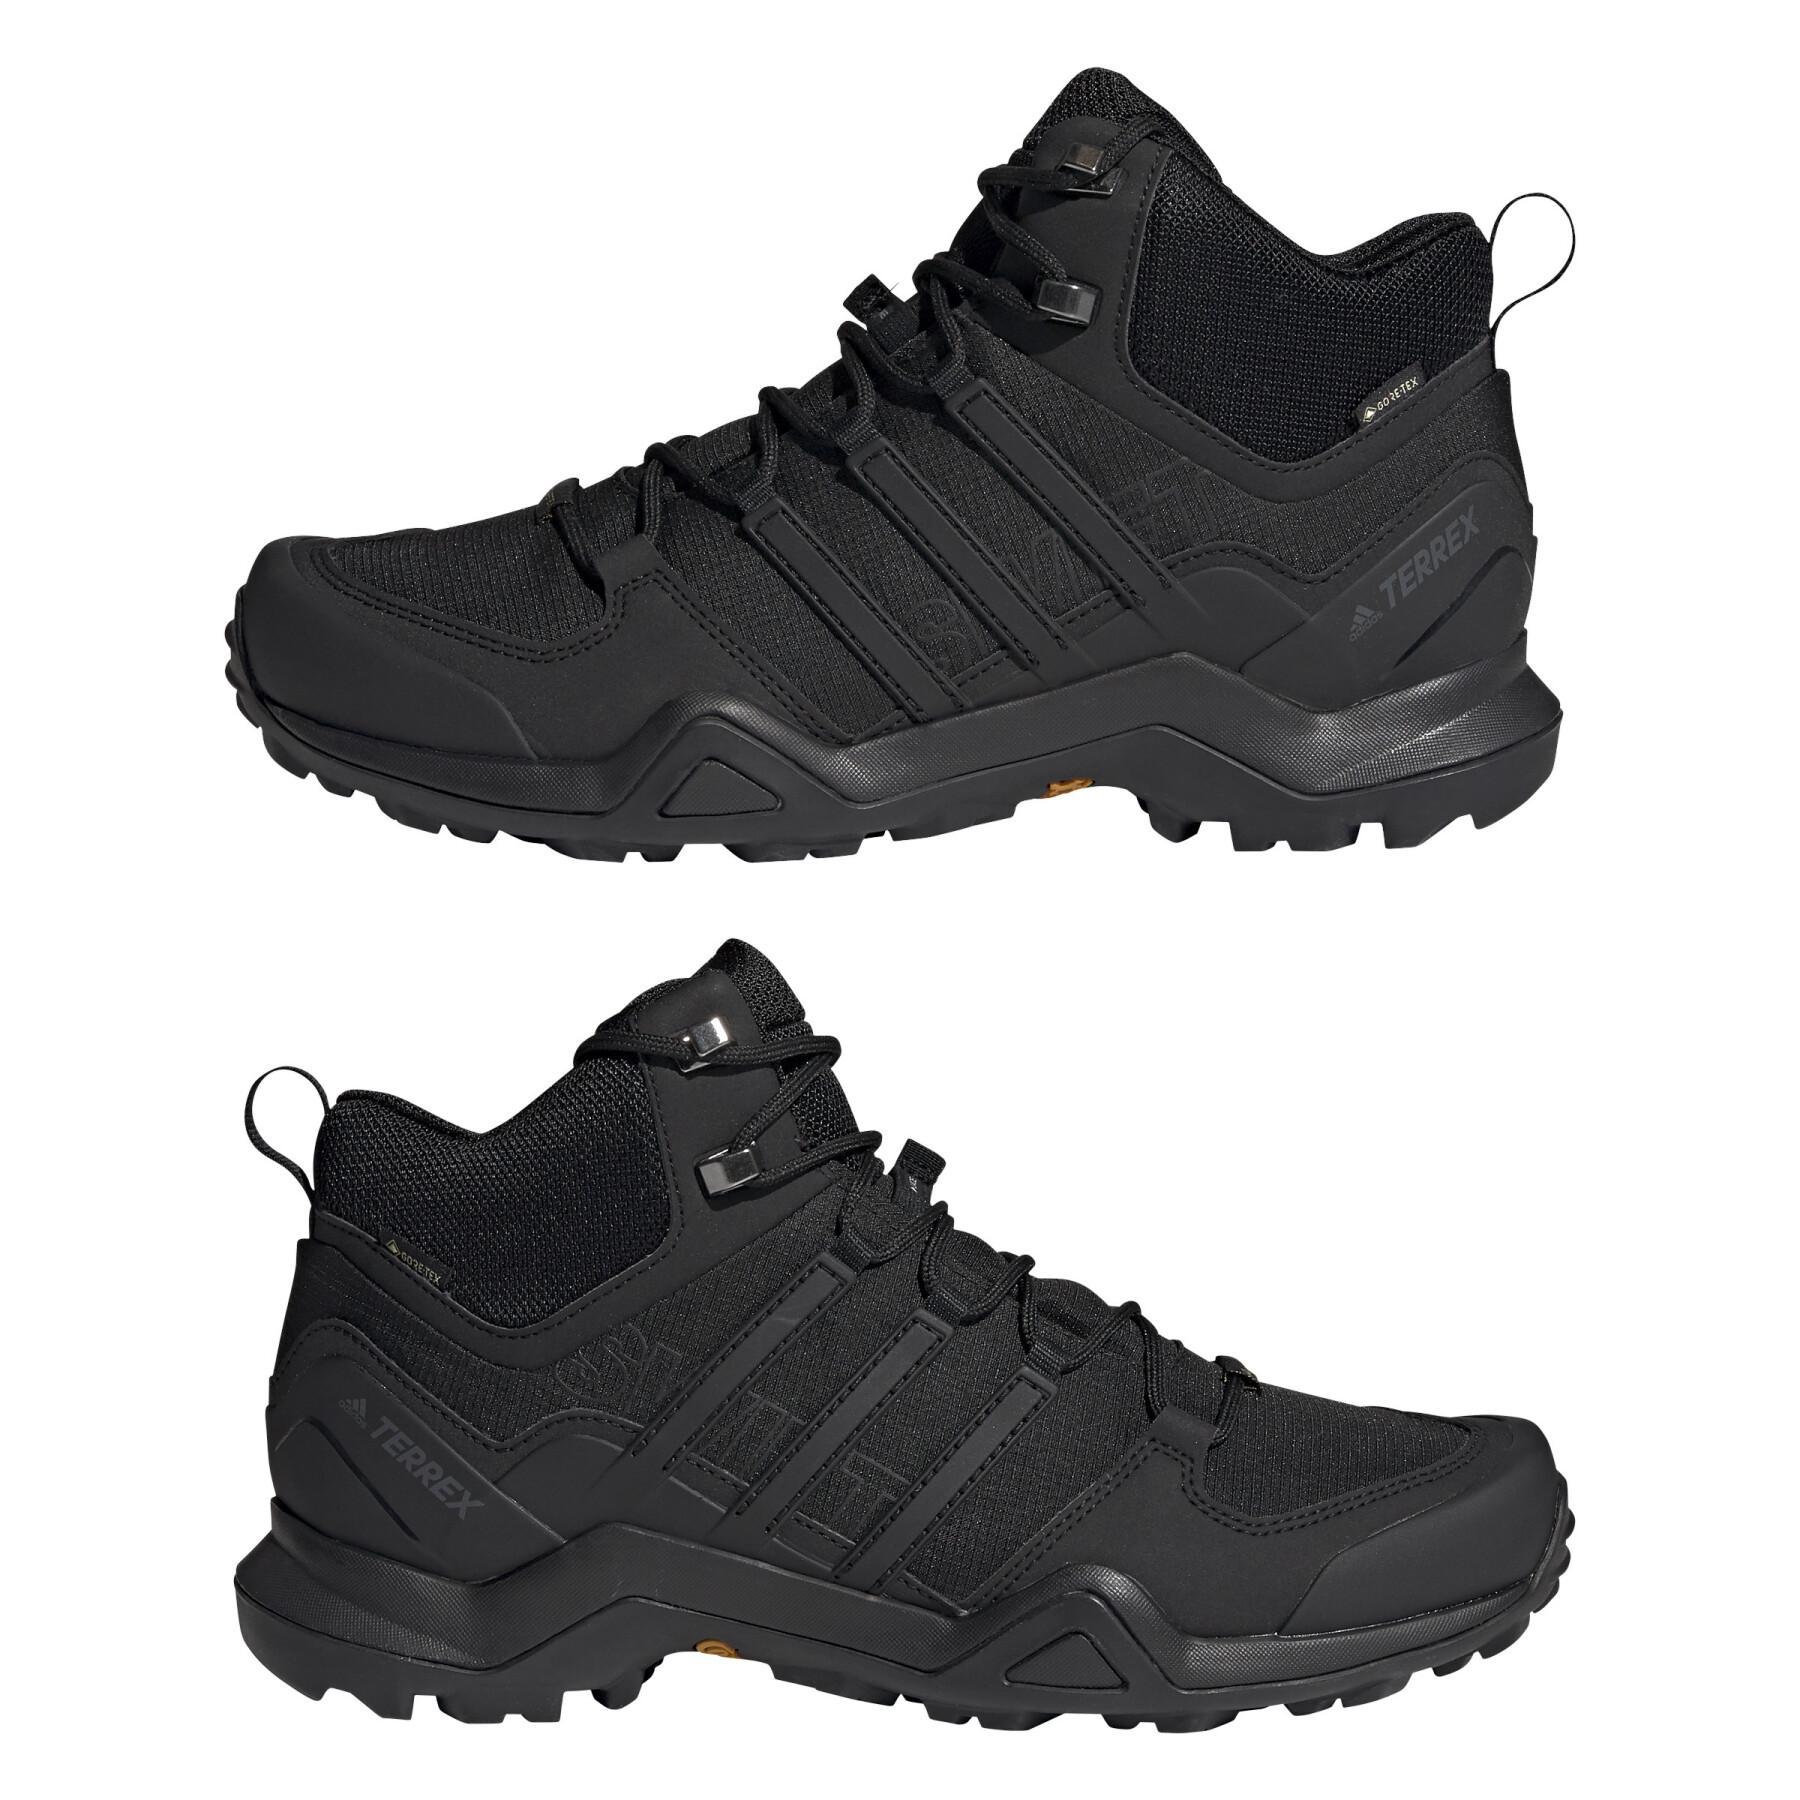 Chaussures de randonnée adidas Terrex swift r2 mid gtx